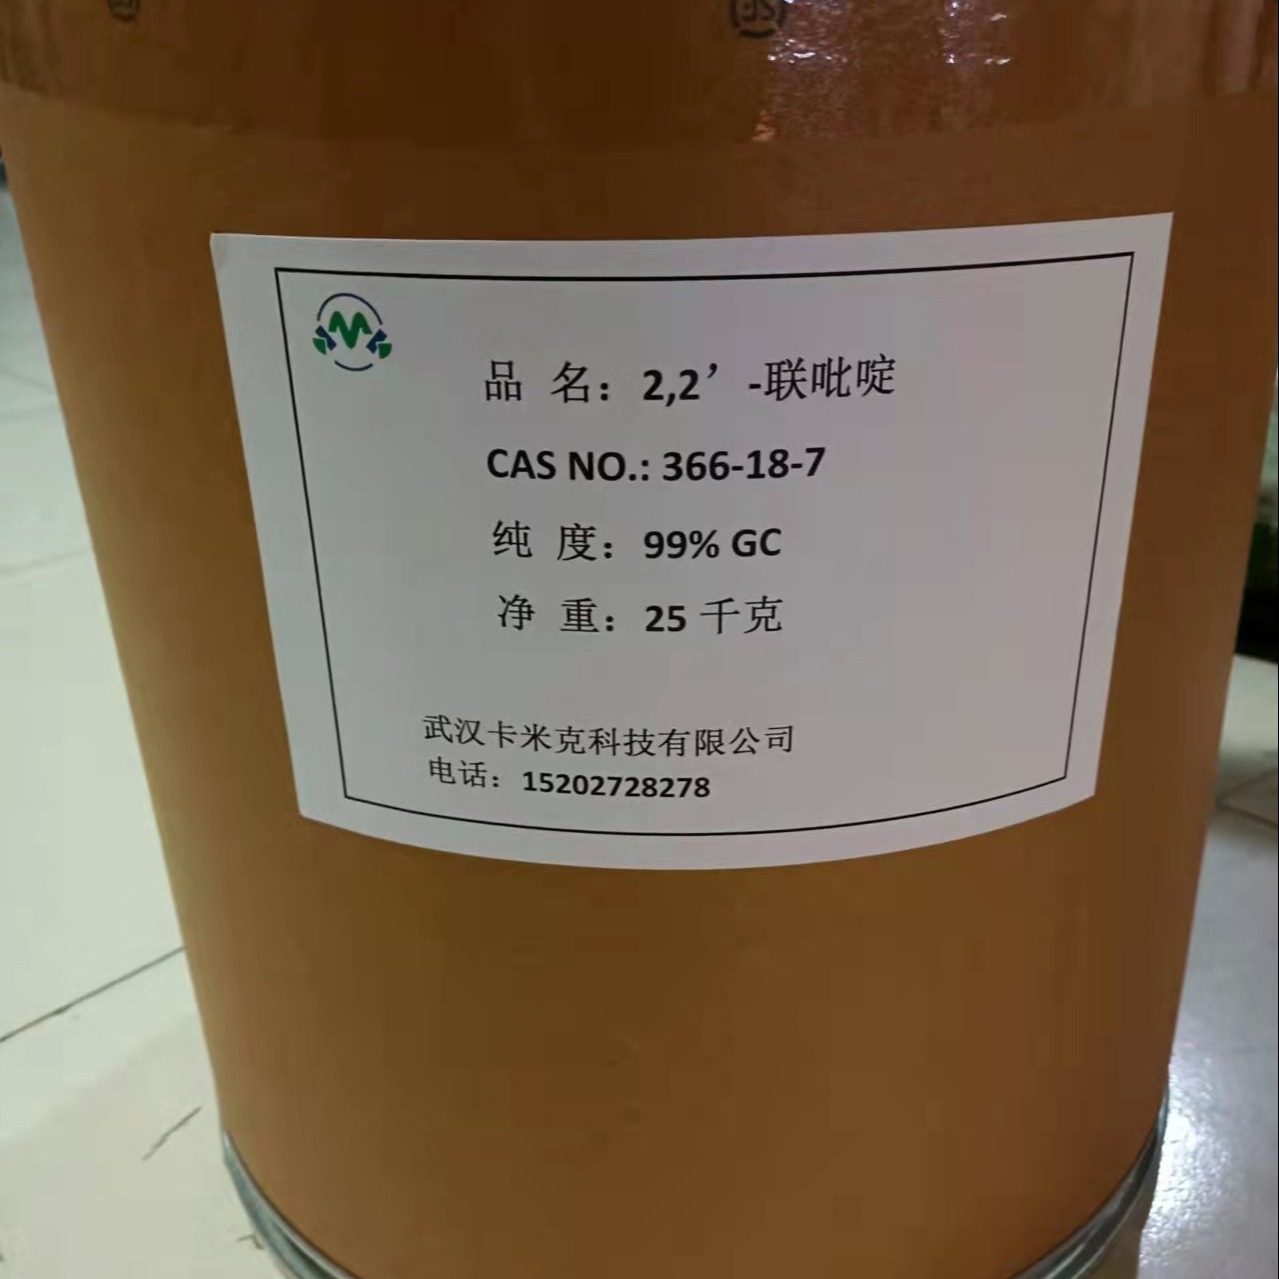 2,2'-联吡啶366-18-7 厂家 价格 现货kmk 黄金产品